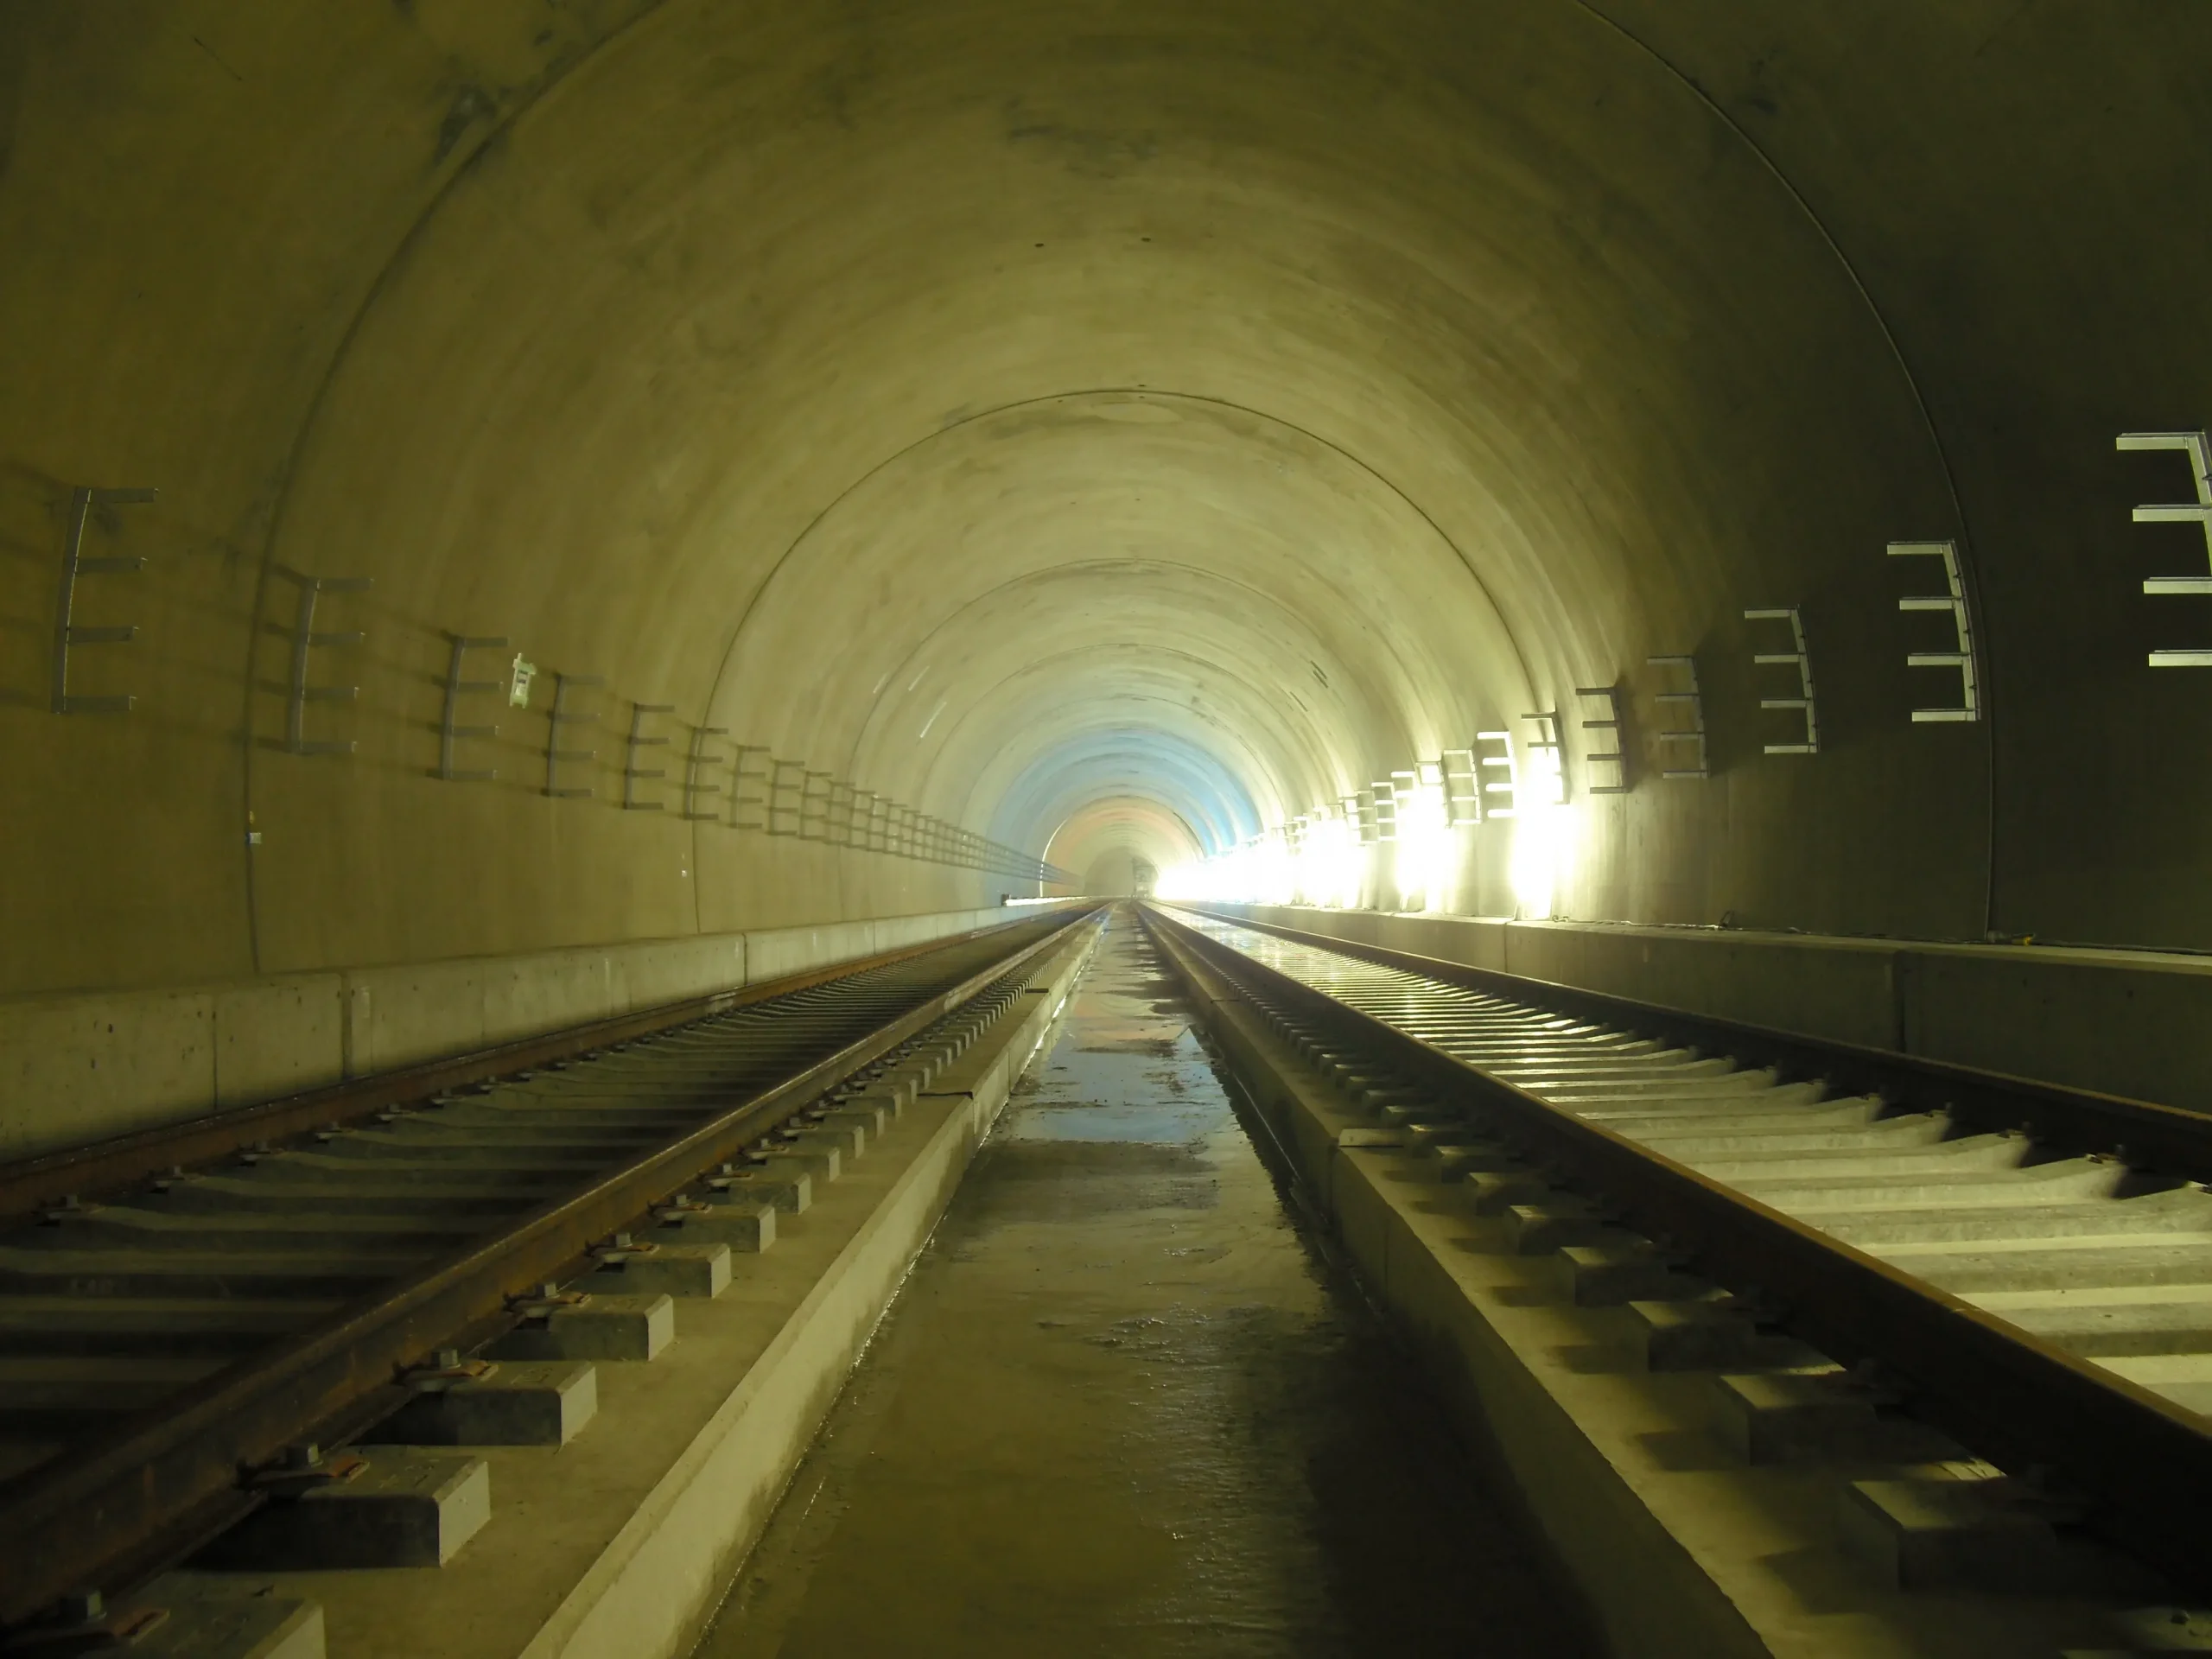 仙台市地下鉄東西線 軌道敷設工事のサムネイル画像です